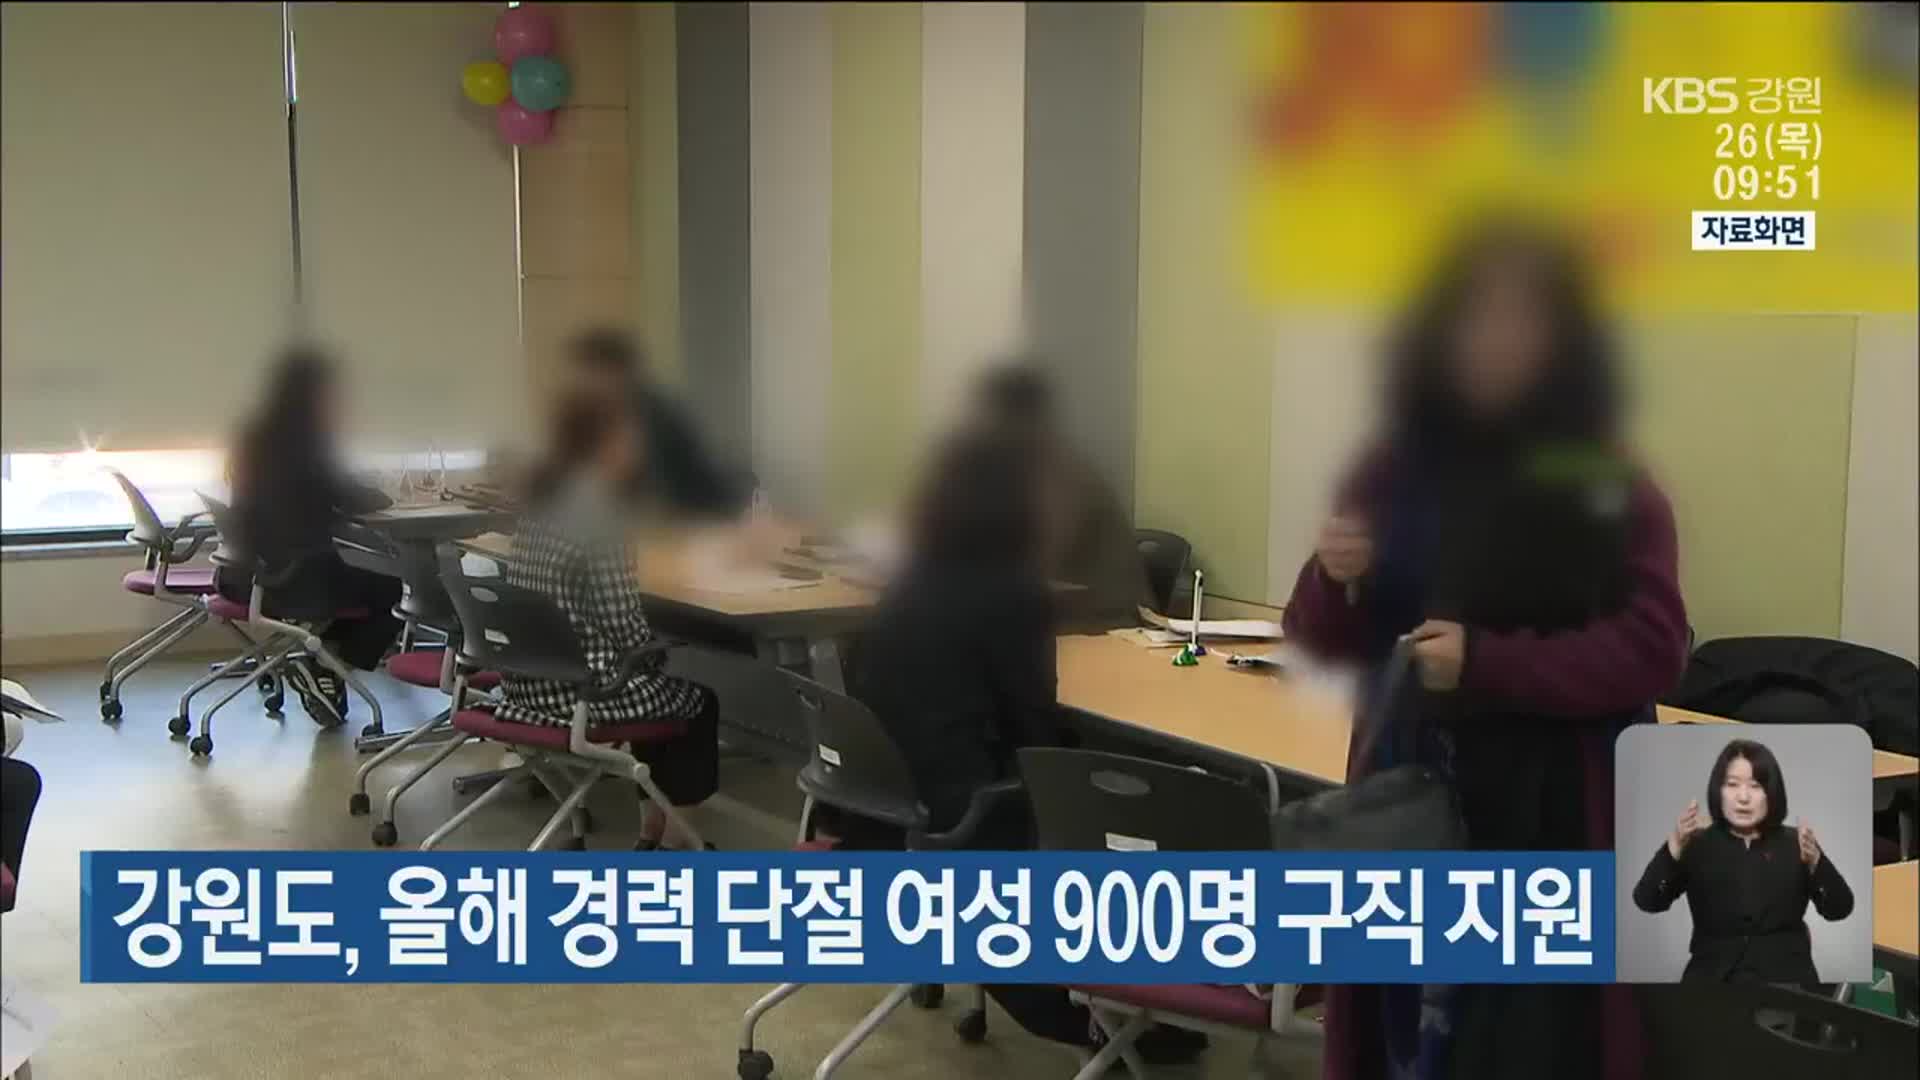 강원도, 올해 경력 단절 여성 900명 구직 지원